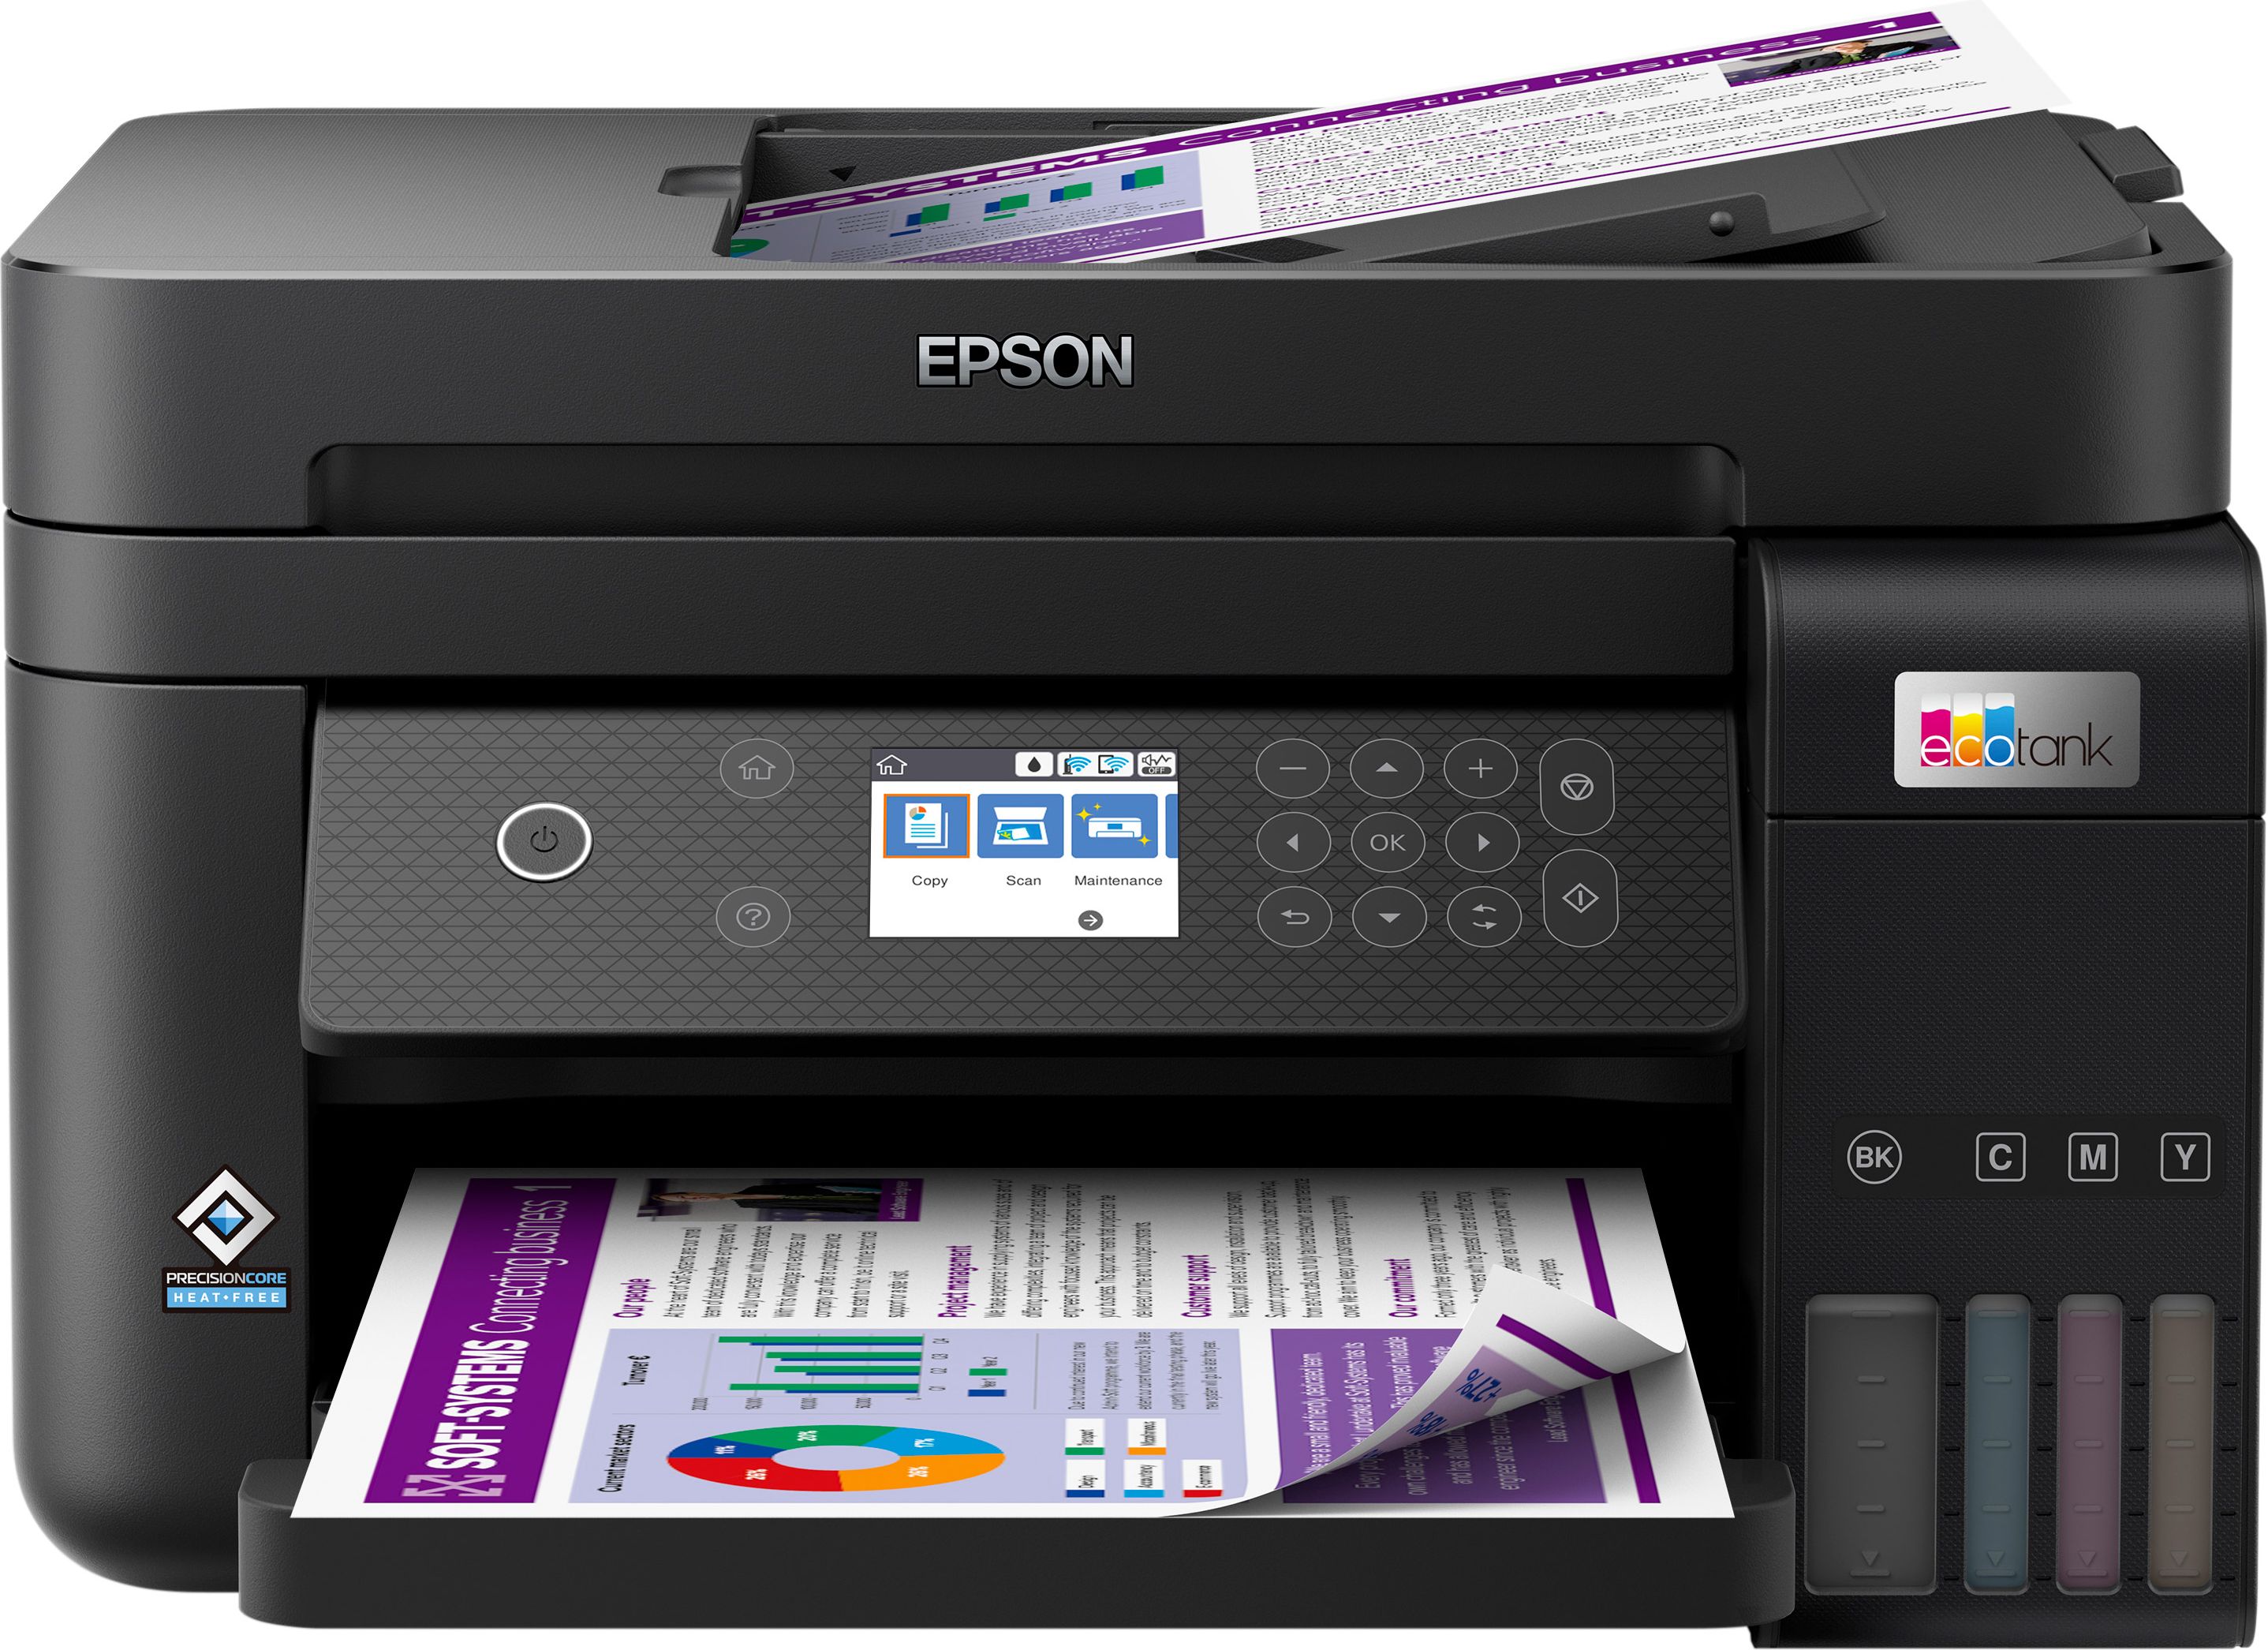 Epson EcoTank ET-3850 Inkjet All In One Wireless Printer - Black Black